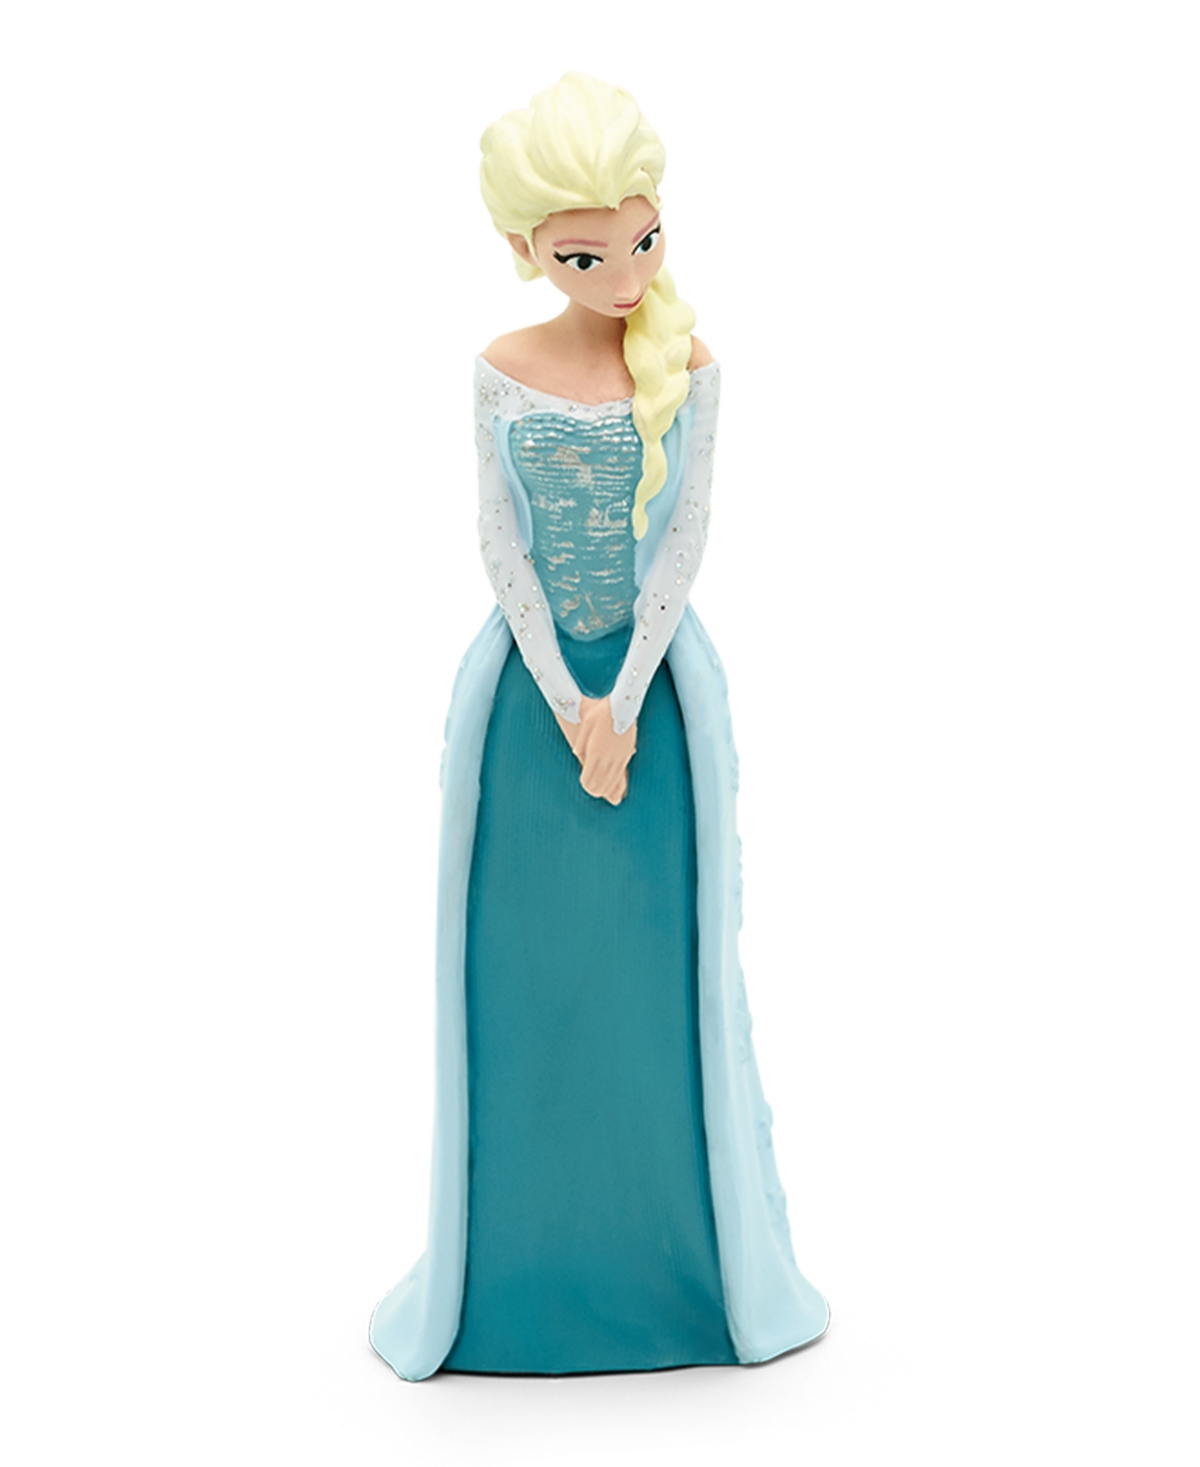 Tonies Kids' Disney Frozen Audio Play Figurine In No Color